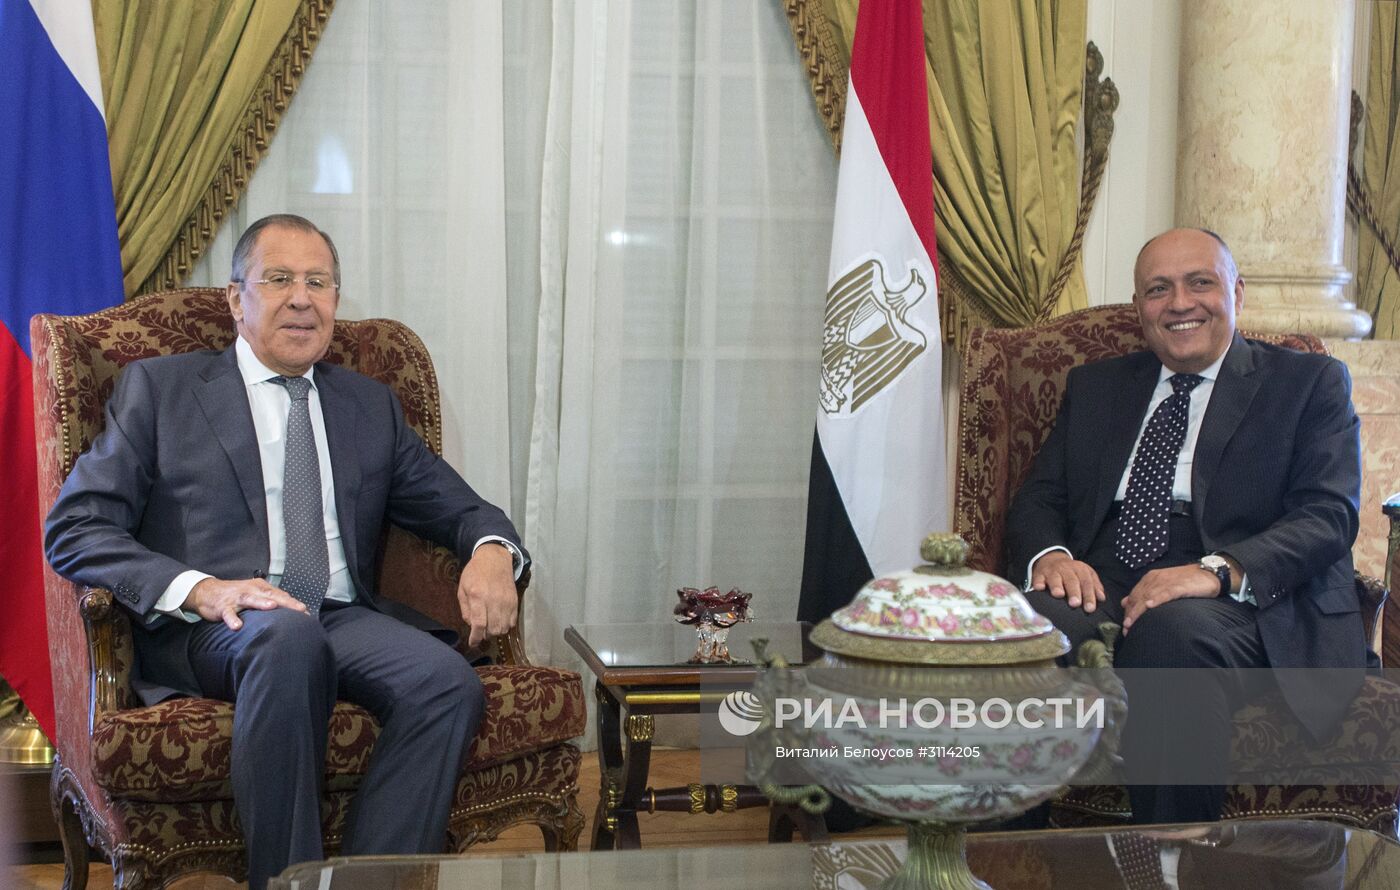 Визит министра иностранных дел РФ С. Лаврова и министра обороны РФ С. Шойгу в Каир